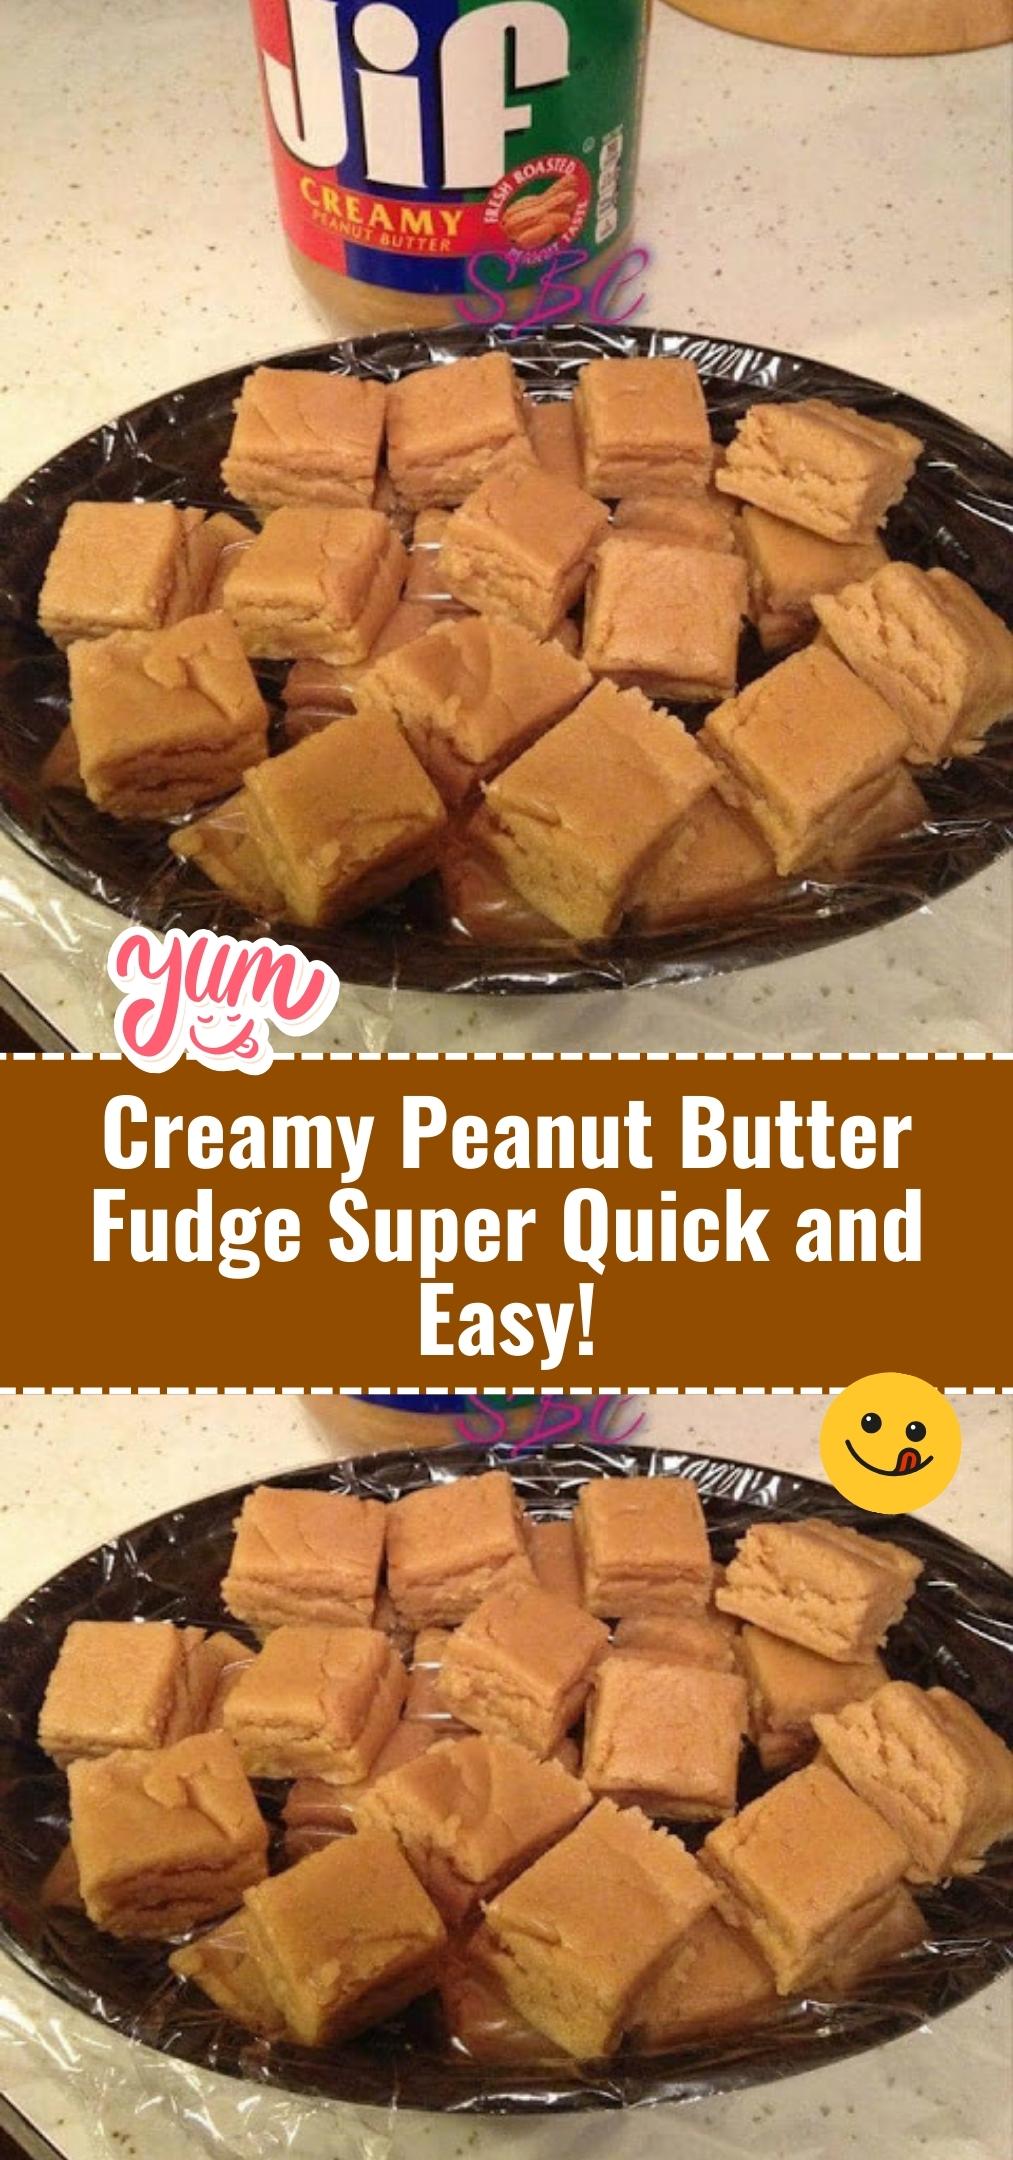 Creamy Peanut Butter Fudge Super Quick and Easy!